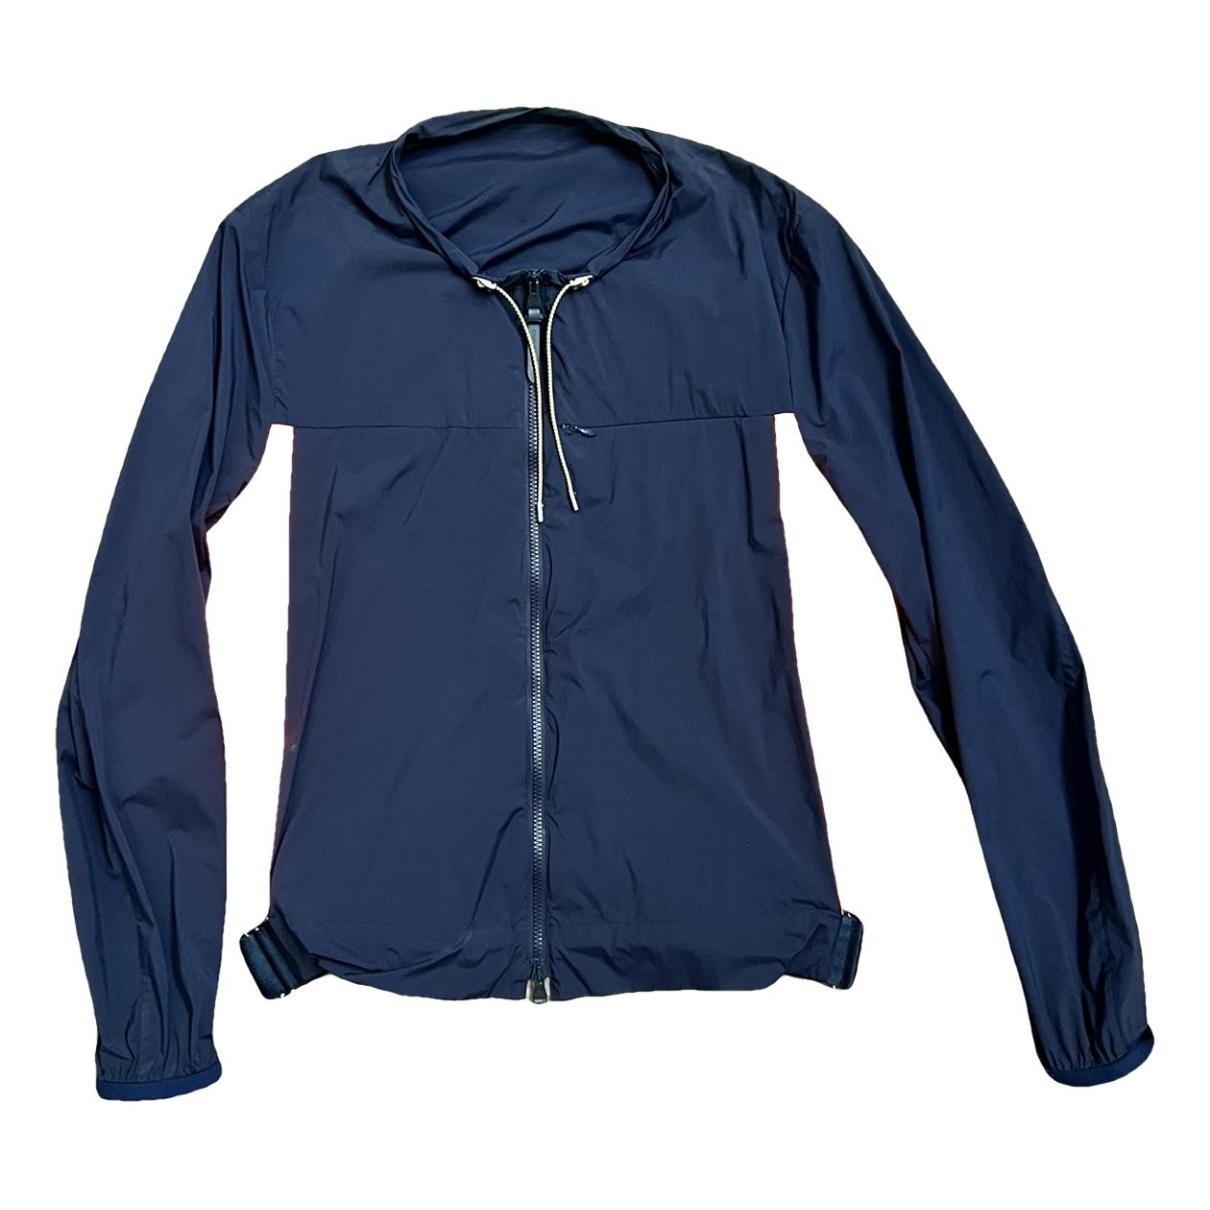 Louis Vuitton Jacken aus Polyester - Grau - Größe 50 - 26431655